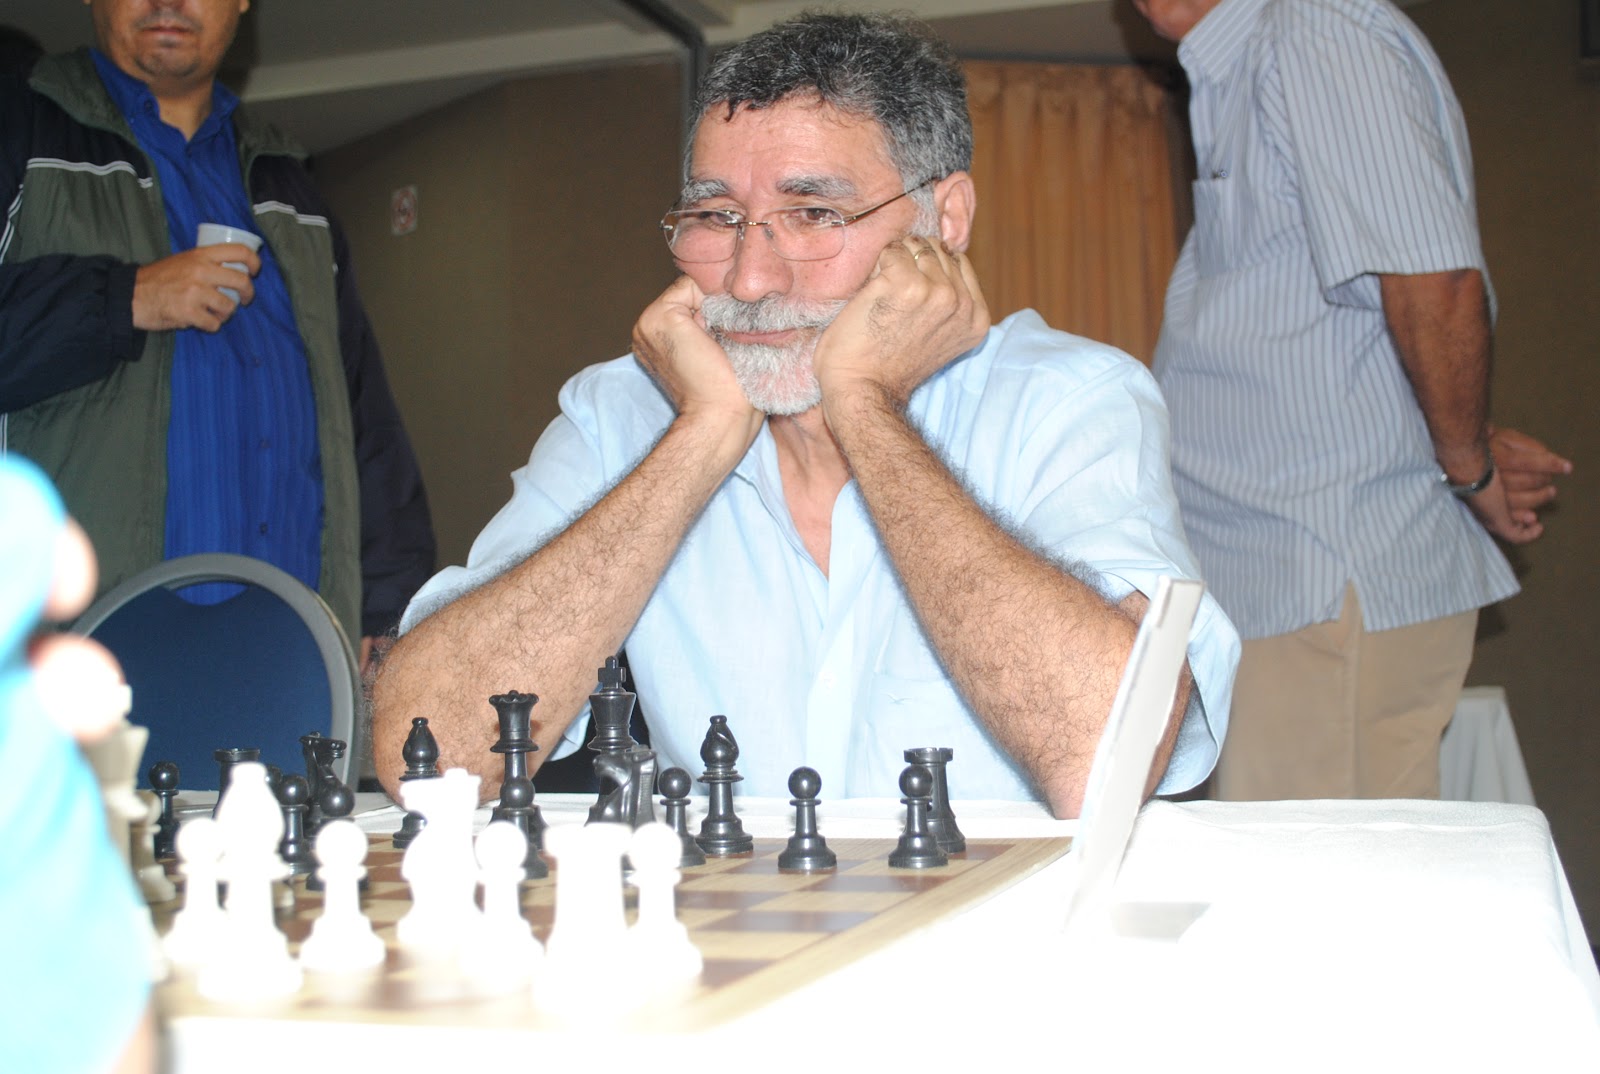 Ding derrota Nepomniachtchti e é o primeiro chinês campeão mundial de xadrez